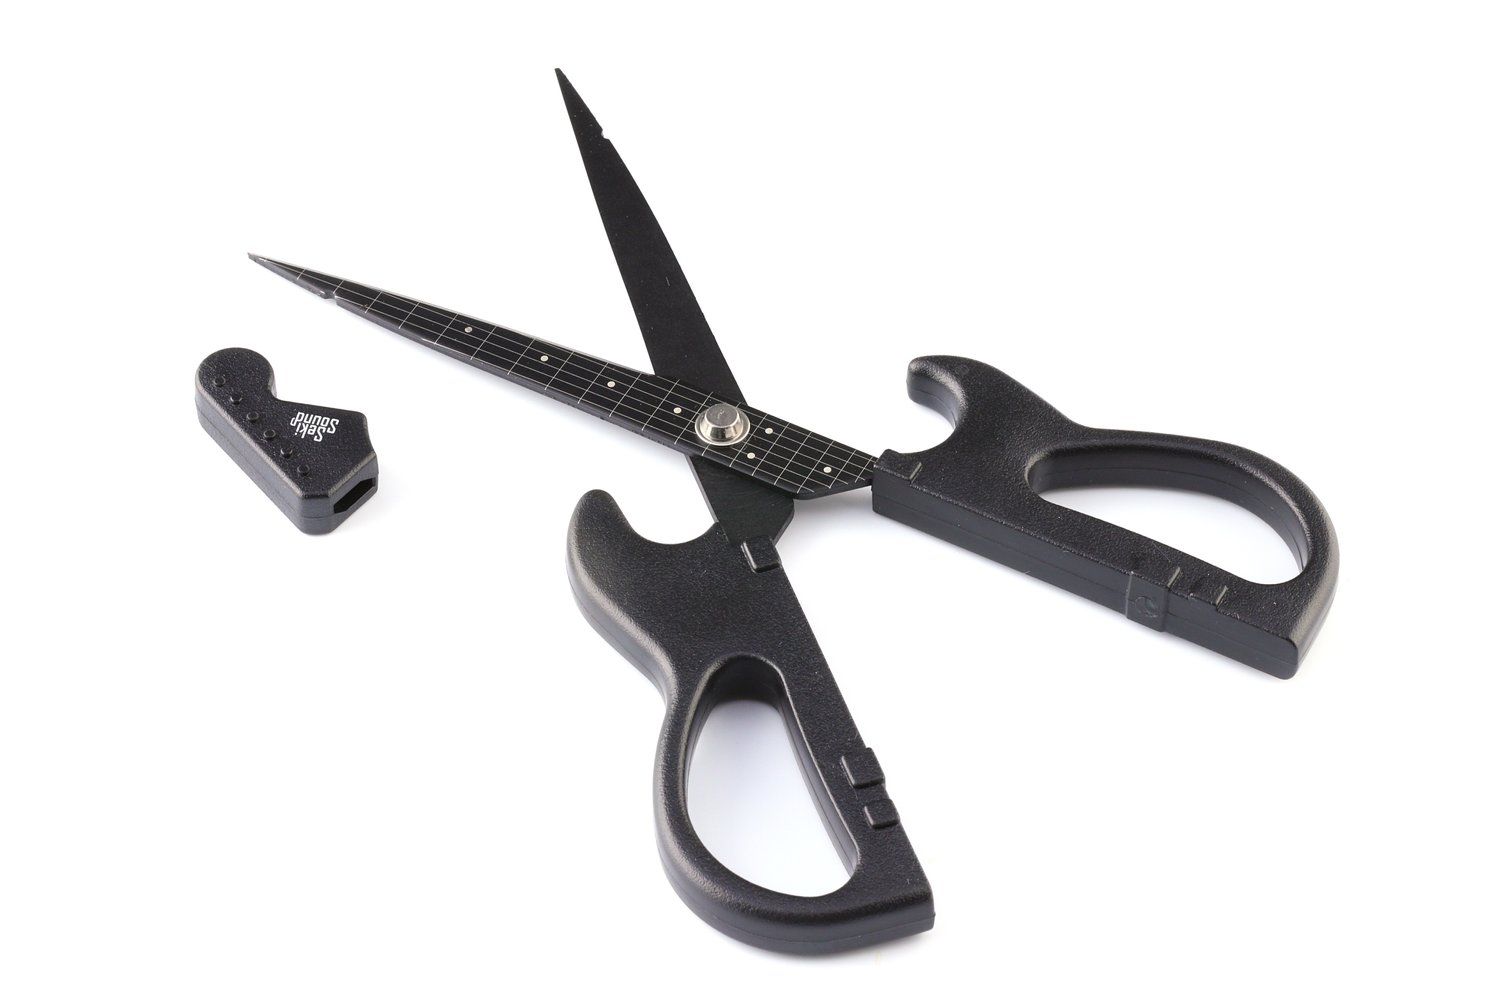 Cardboard Scissors  NIKKEN CUTLERY is cutlery maker. scissors